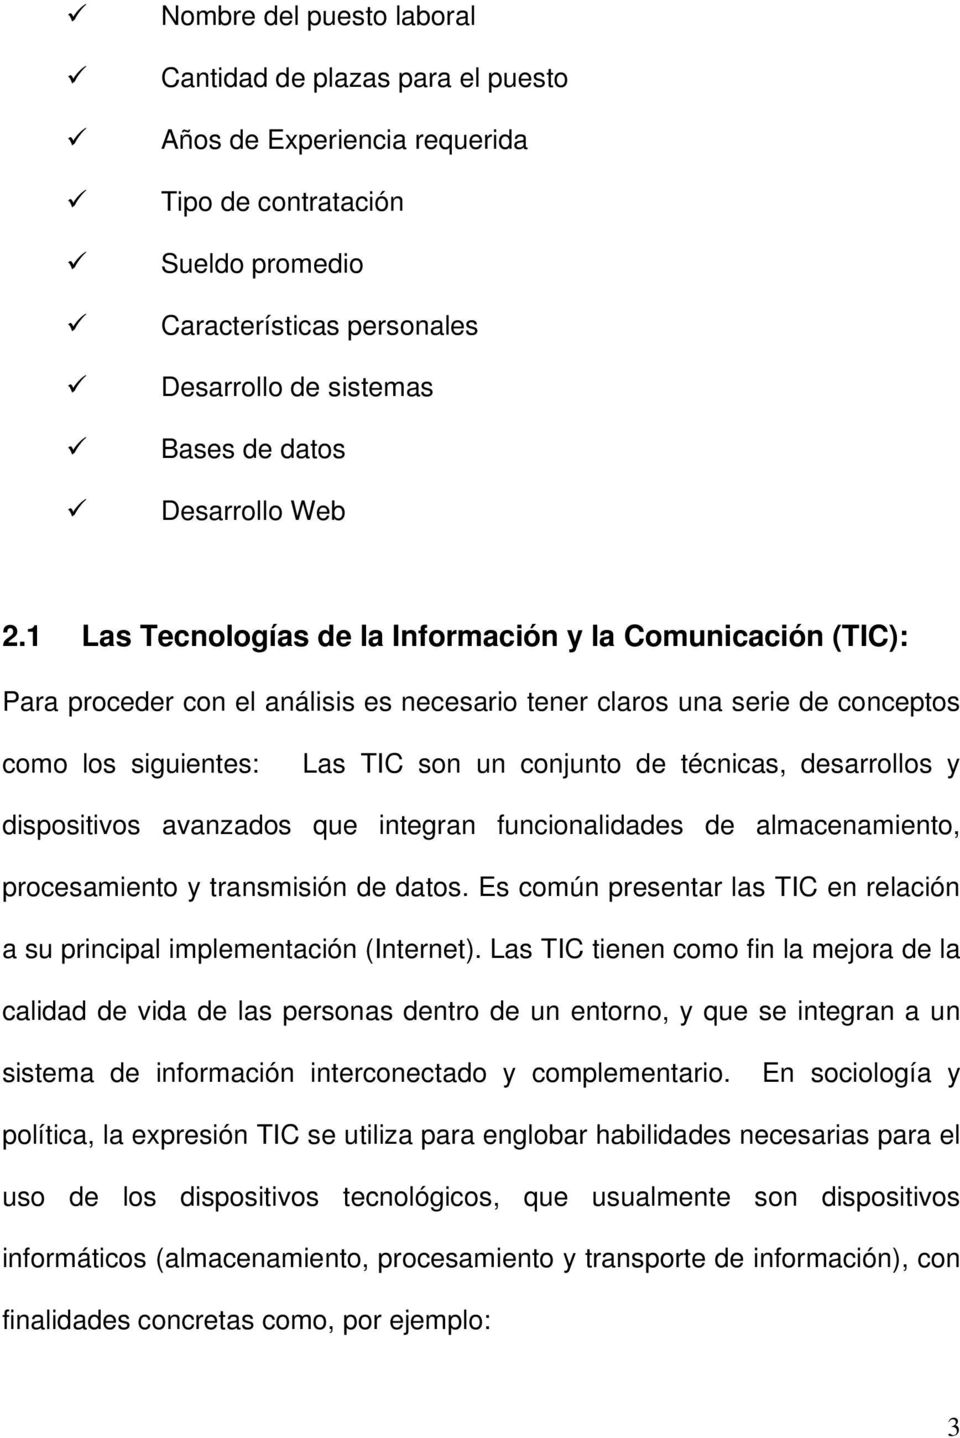 1 Las Tecnologías de la Información y la Comunicación (TIC): Para proceder con el análisis es necesario tener claros una serie de conceptos como los siguientes: Las TIC son un conjunto de técnicas,